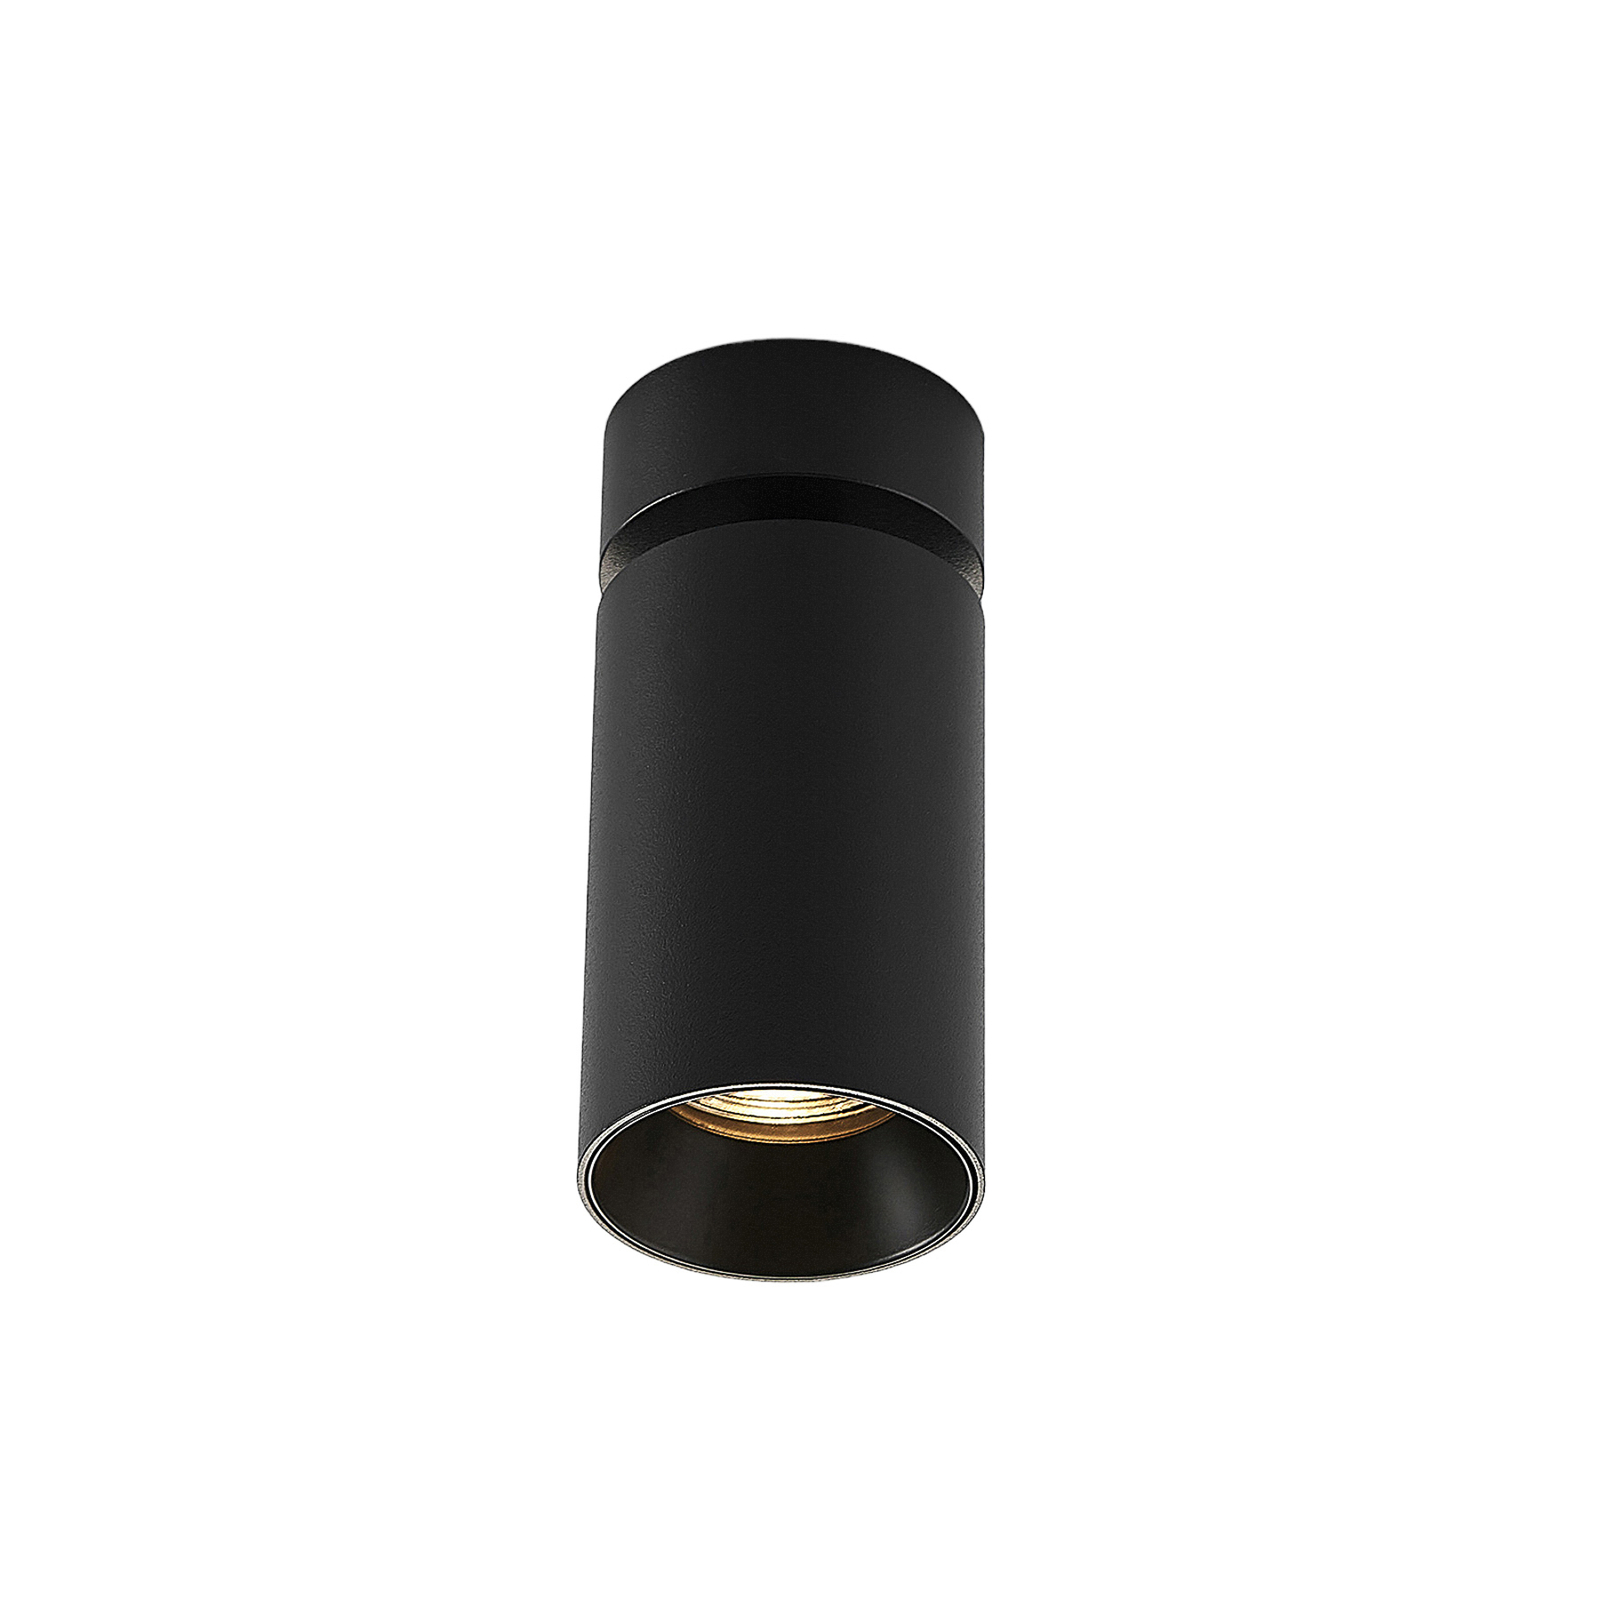 Arcchio spotlight Brinja, set of 3, round, black-gold, aluminium